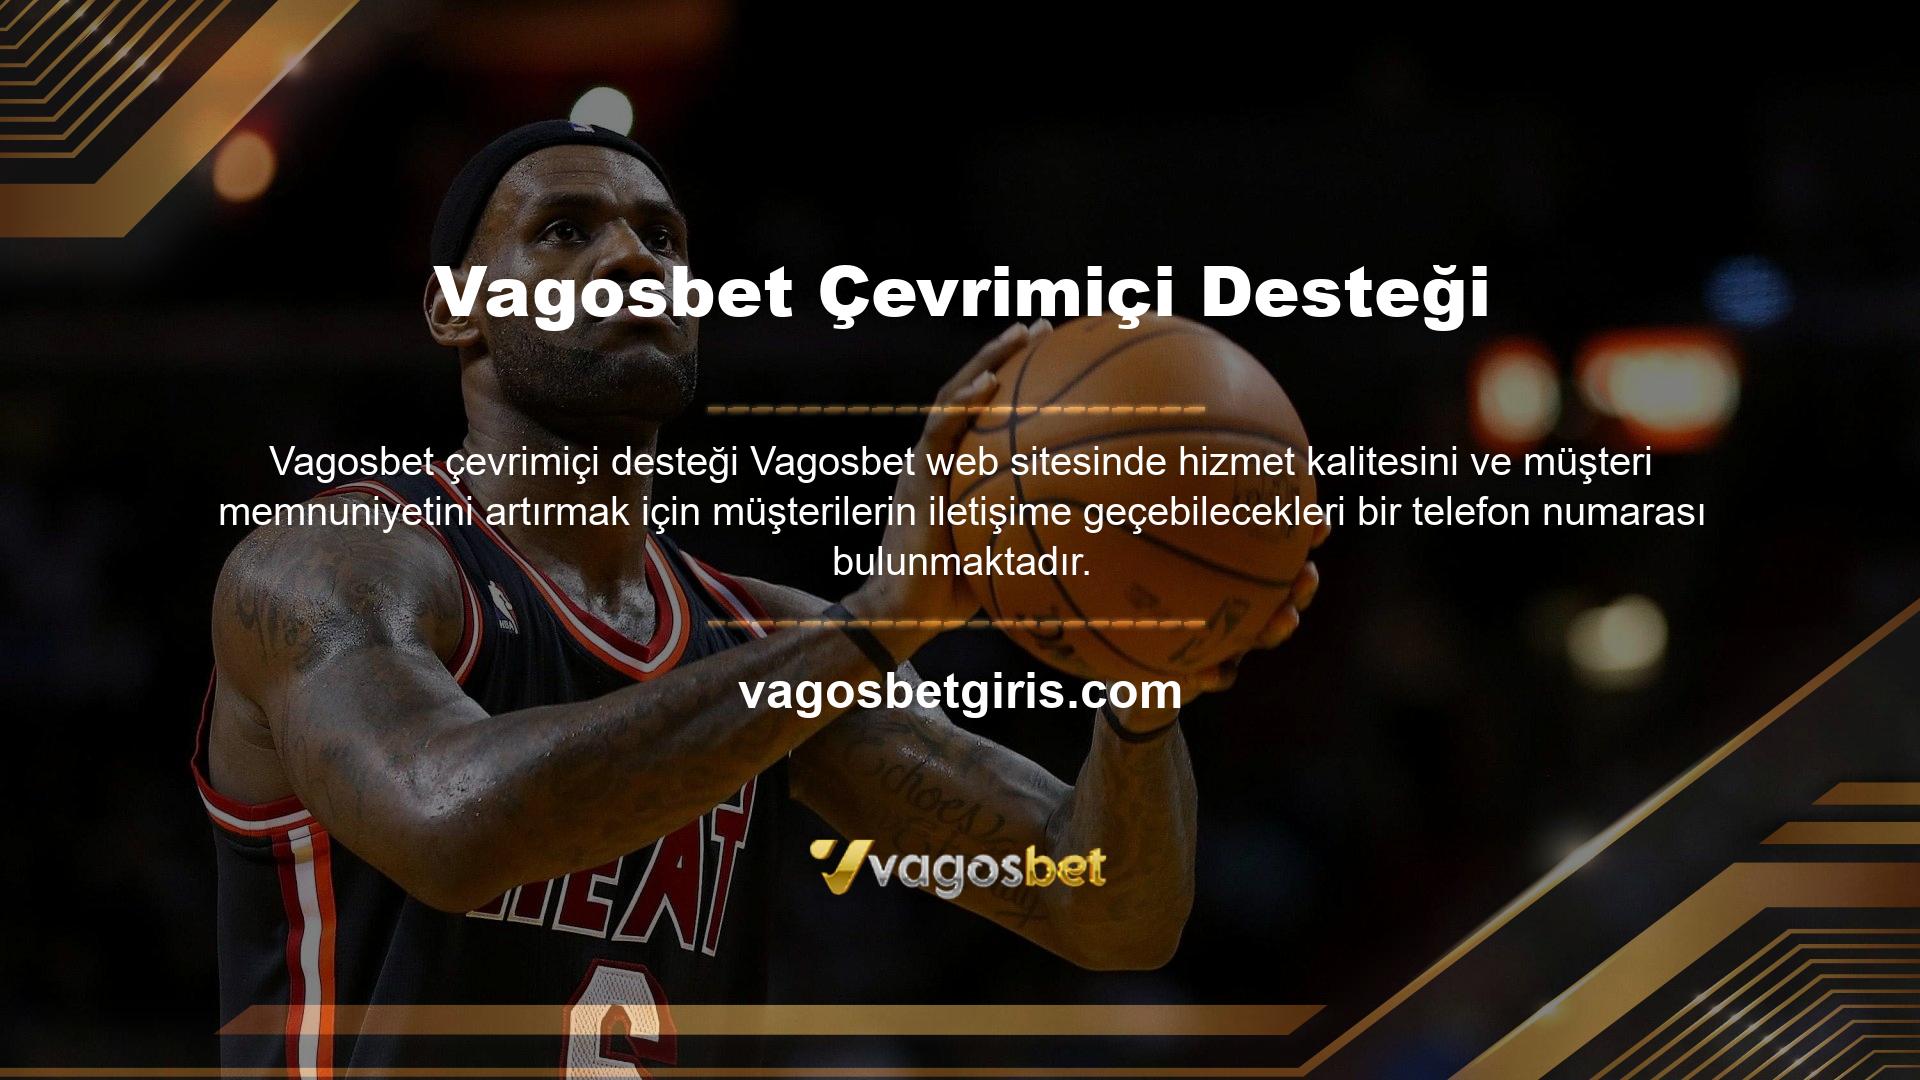 Vagosbet web sitesi, müşteri sorularına yardımcı olmak için 7/24 canlı destek sunmaktadır